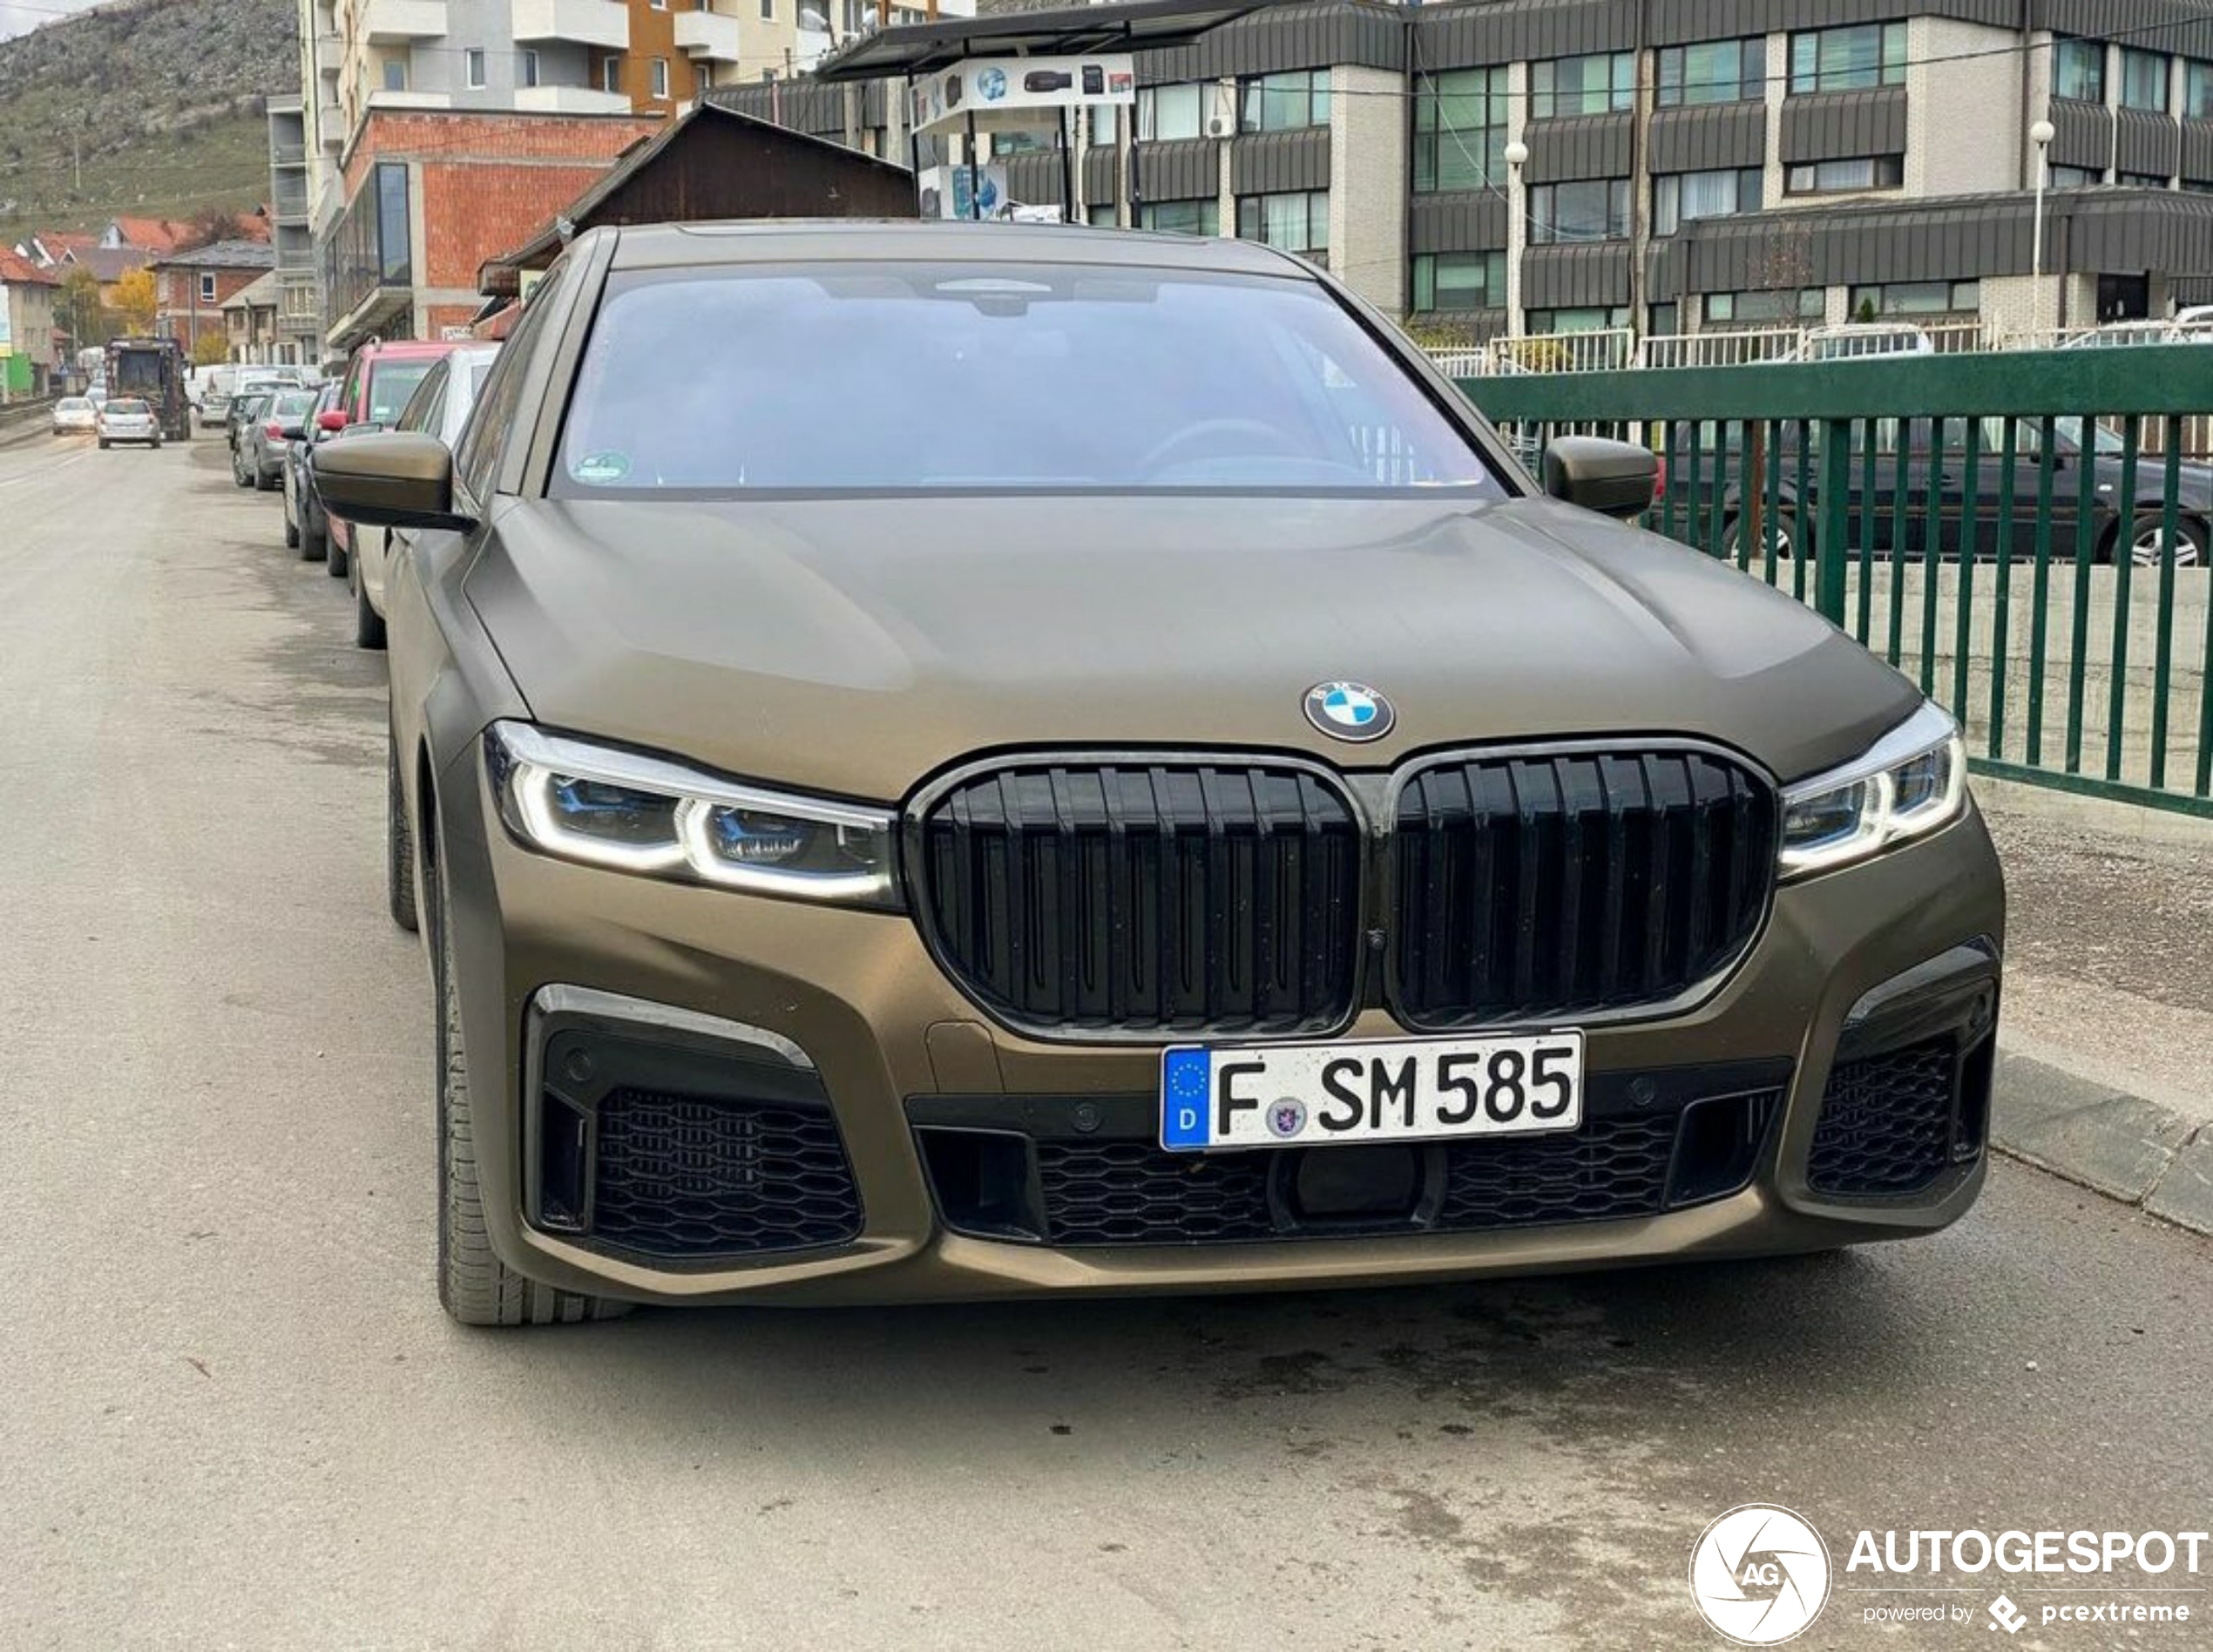 BMW G-Power M760Li xDrive 2019